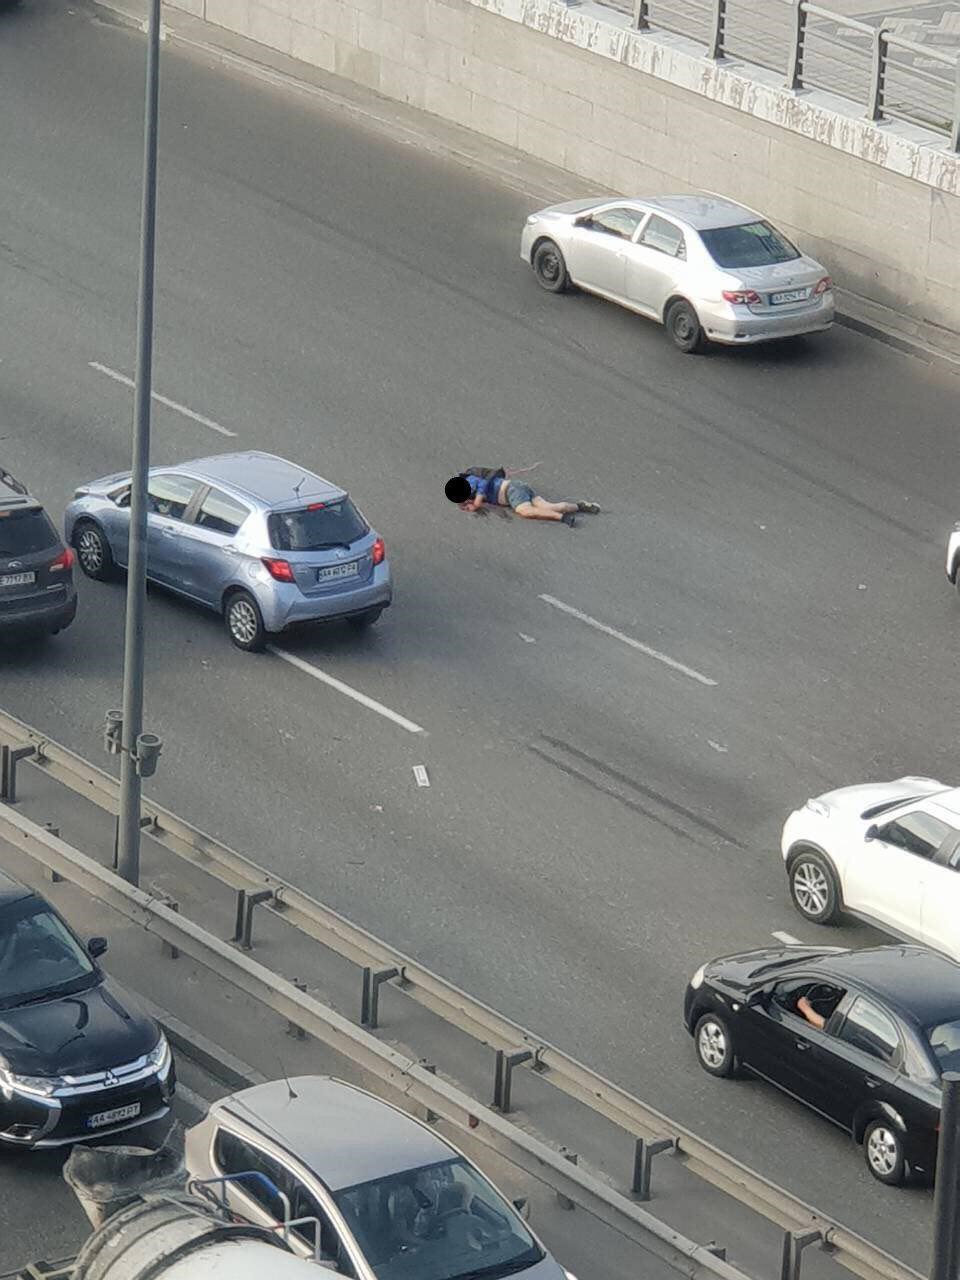 Позбувся голови: у Києві чоловік кинувся під авто і не вижив. Фото 18+